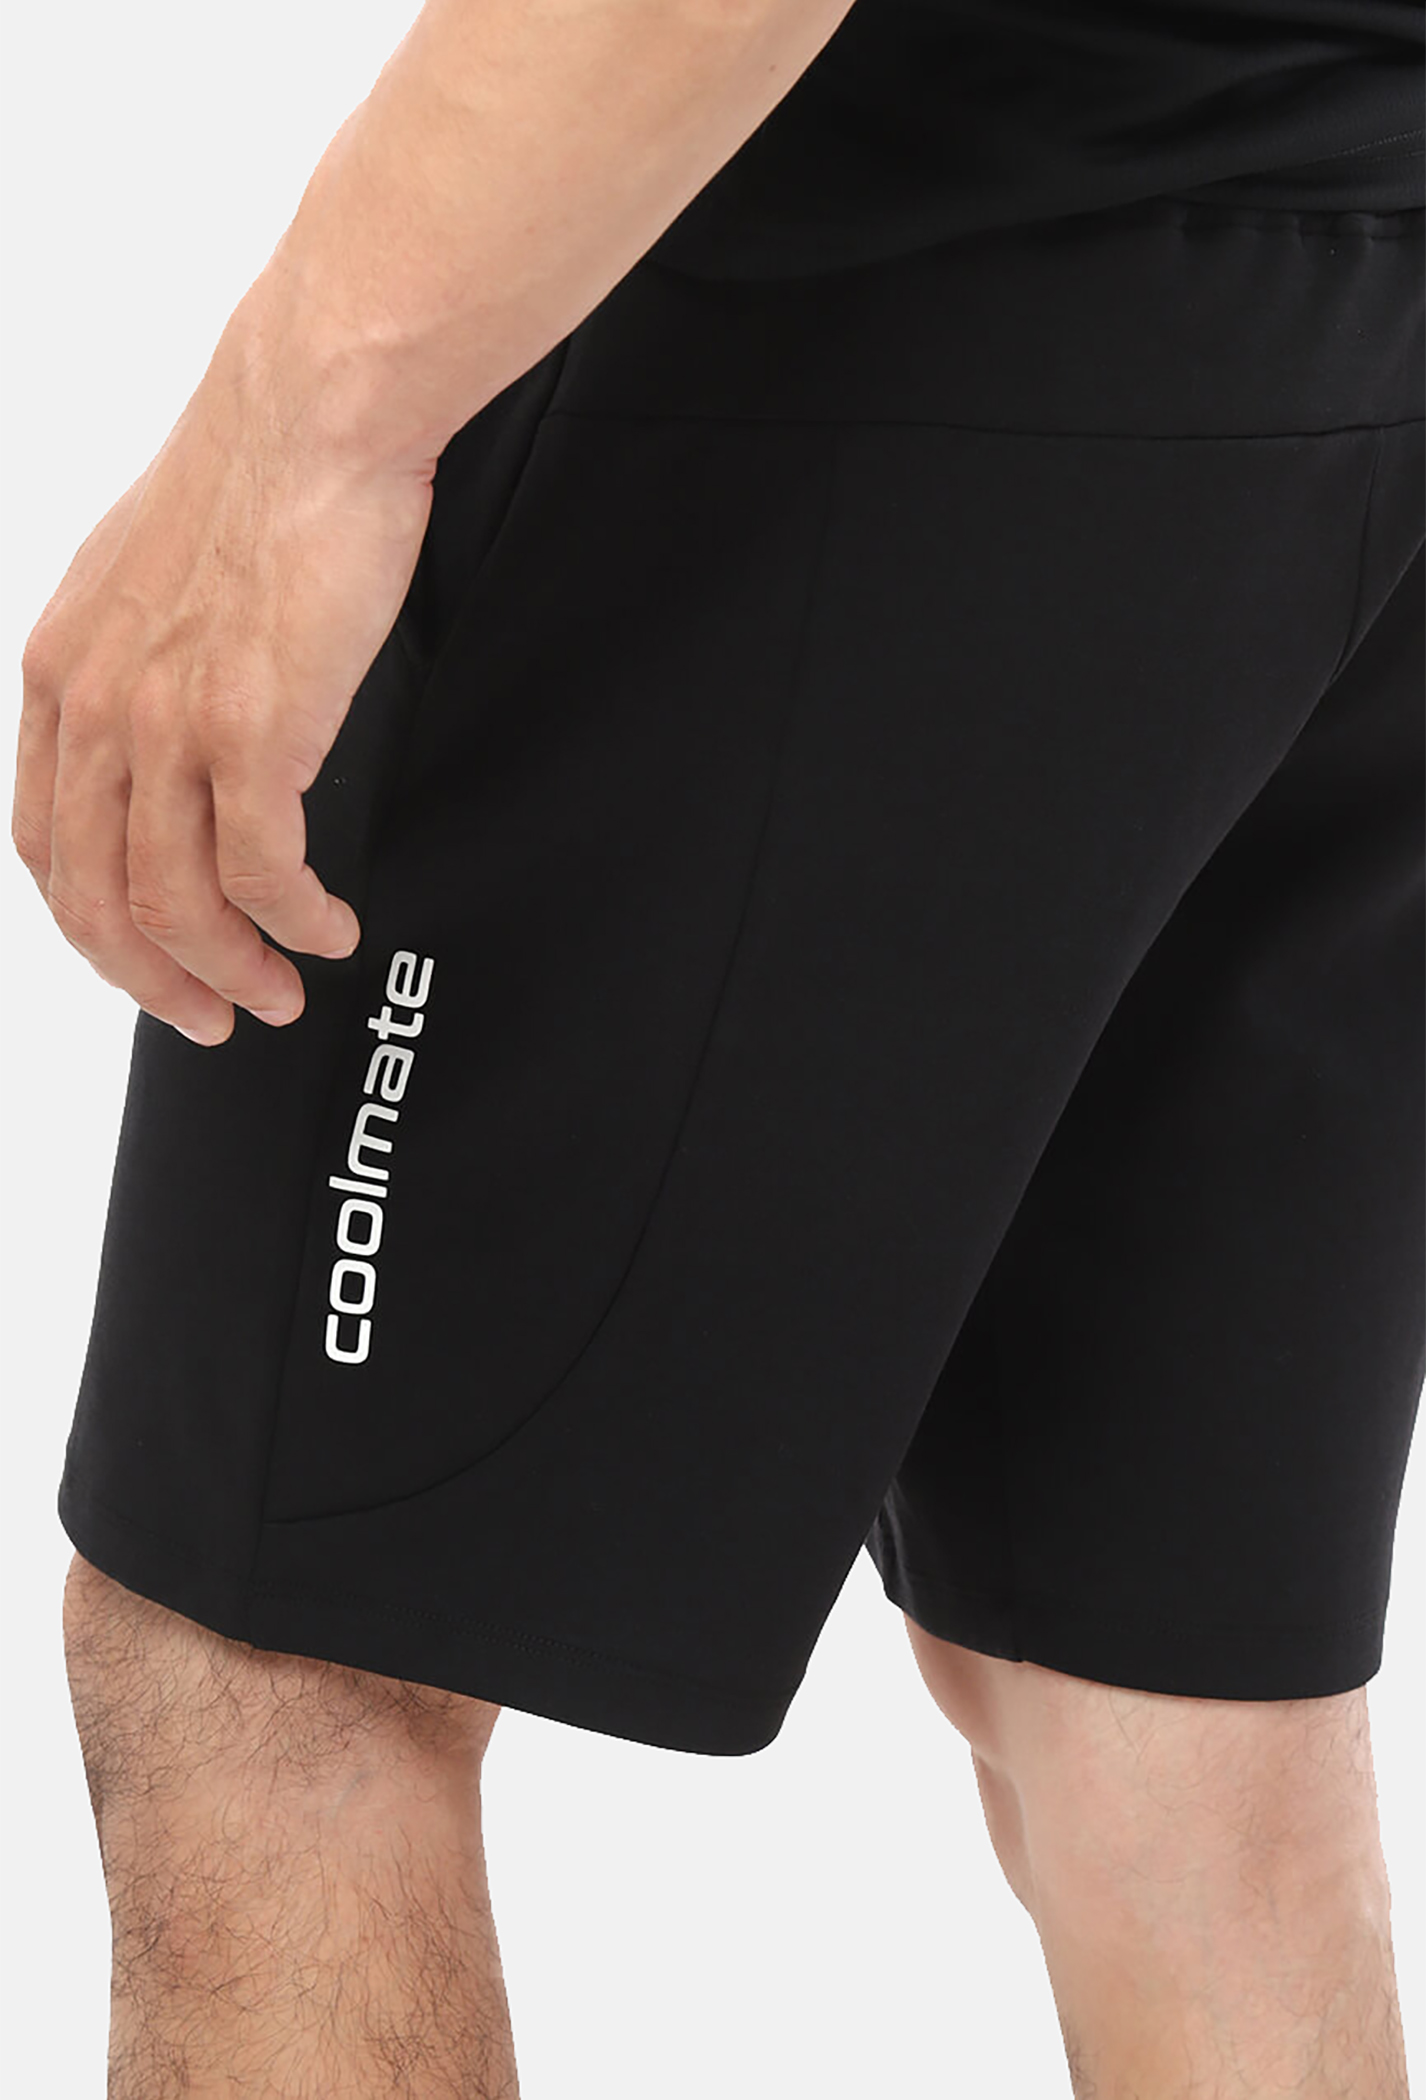 SĂN DEAL - Quần Shorts nam Easy Active màu đen (Form nhỏ) Đen 3